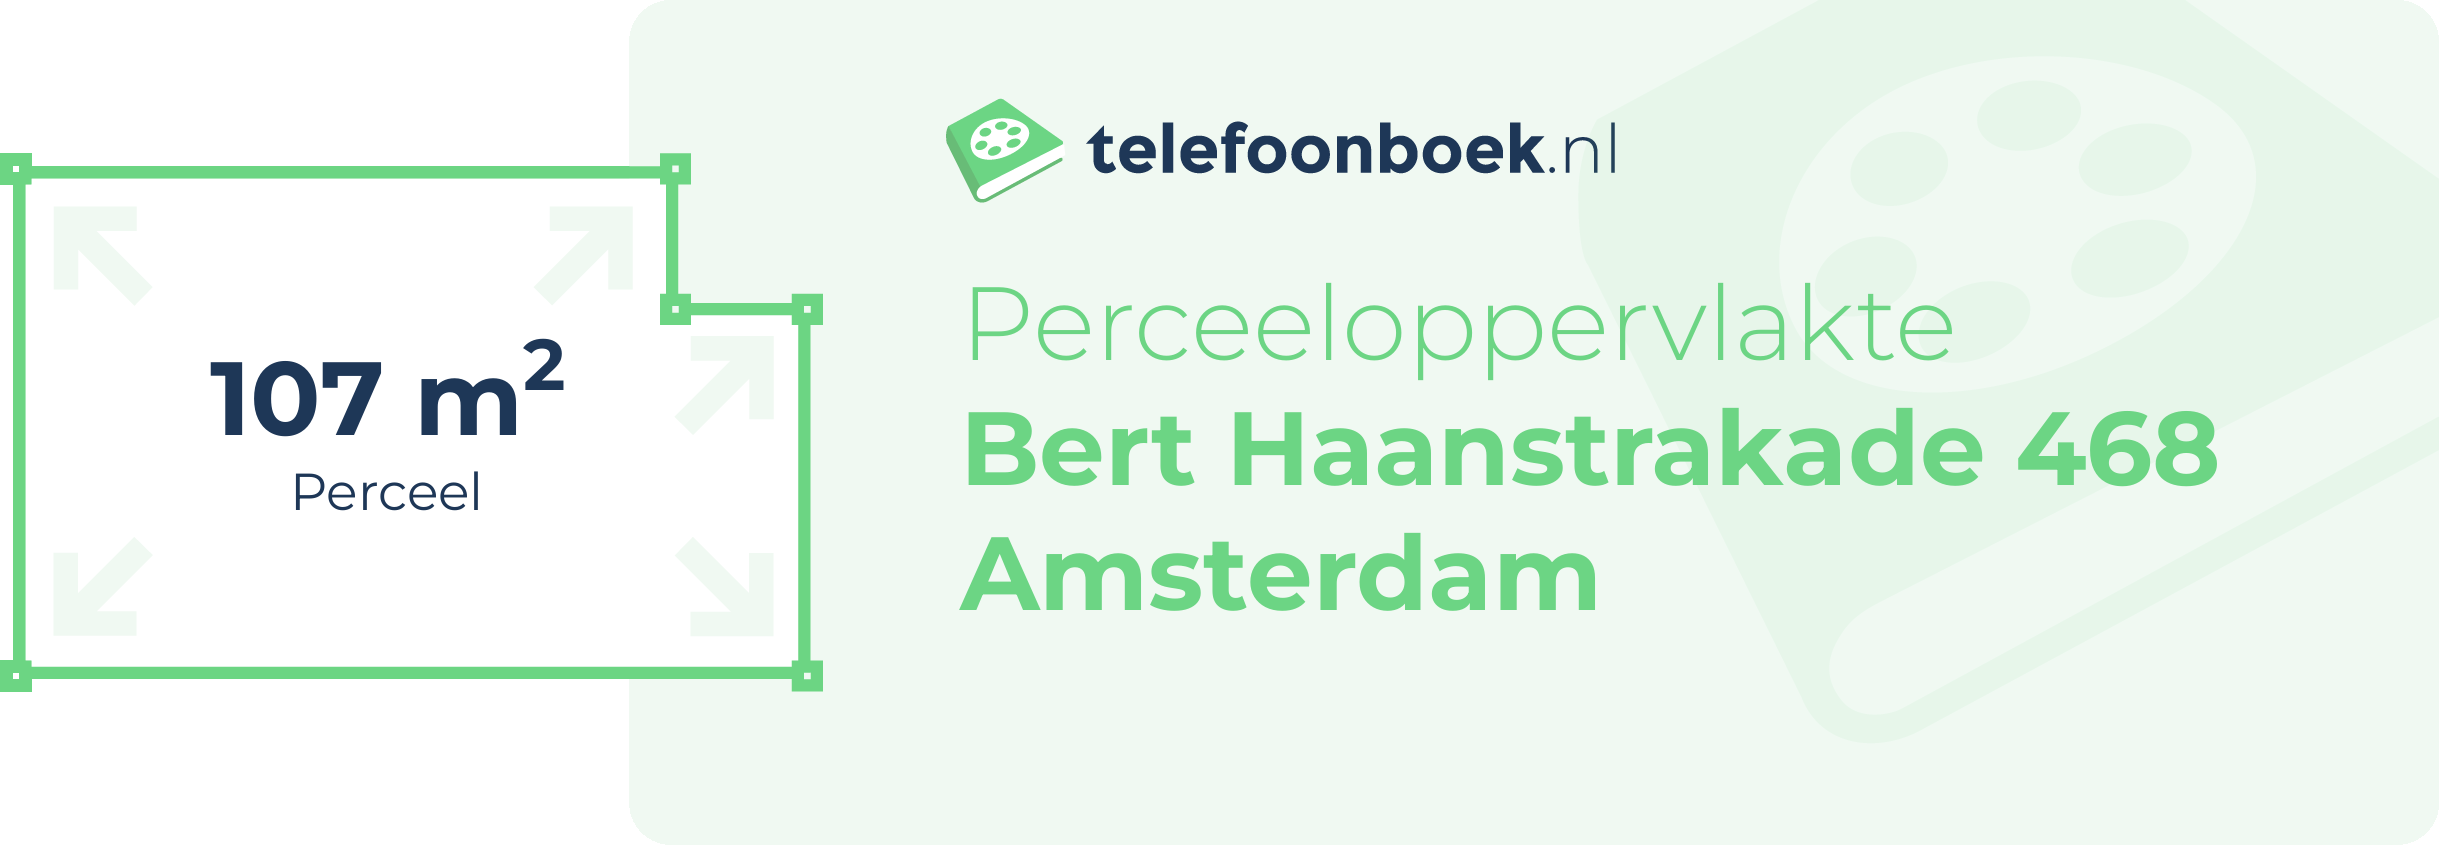 Perceeloppervlakte Bert Haanstrakade 468 Amsterdam